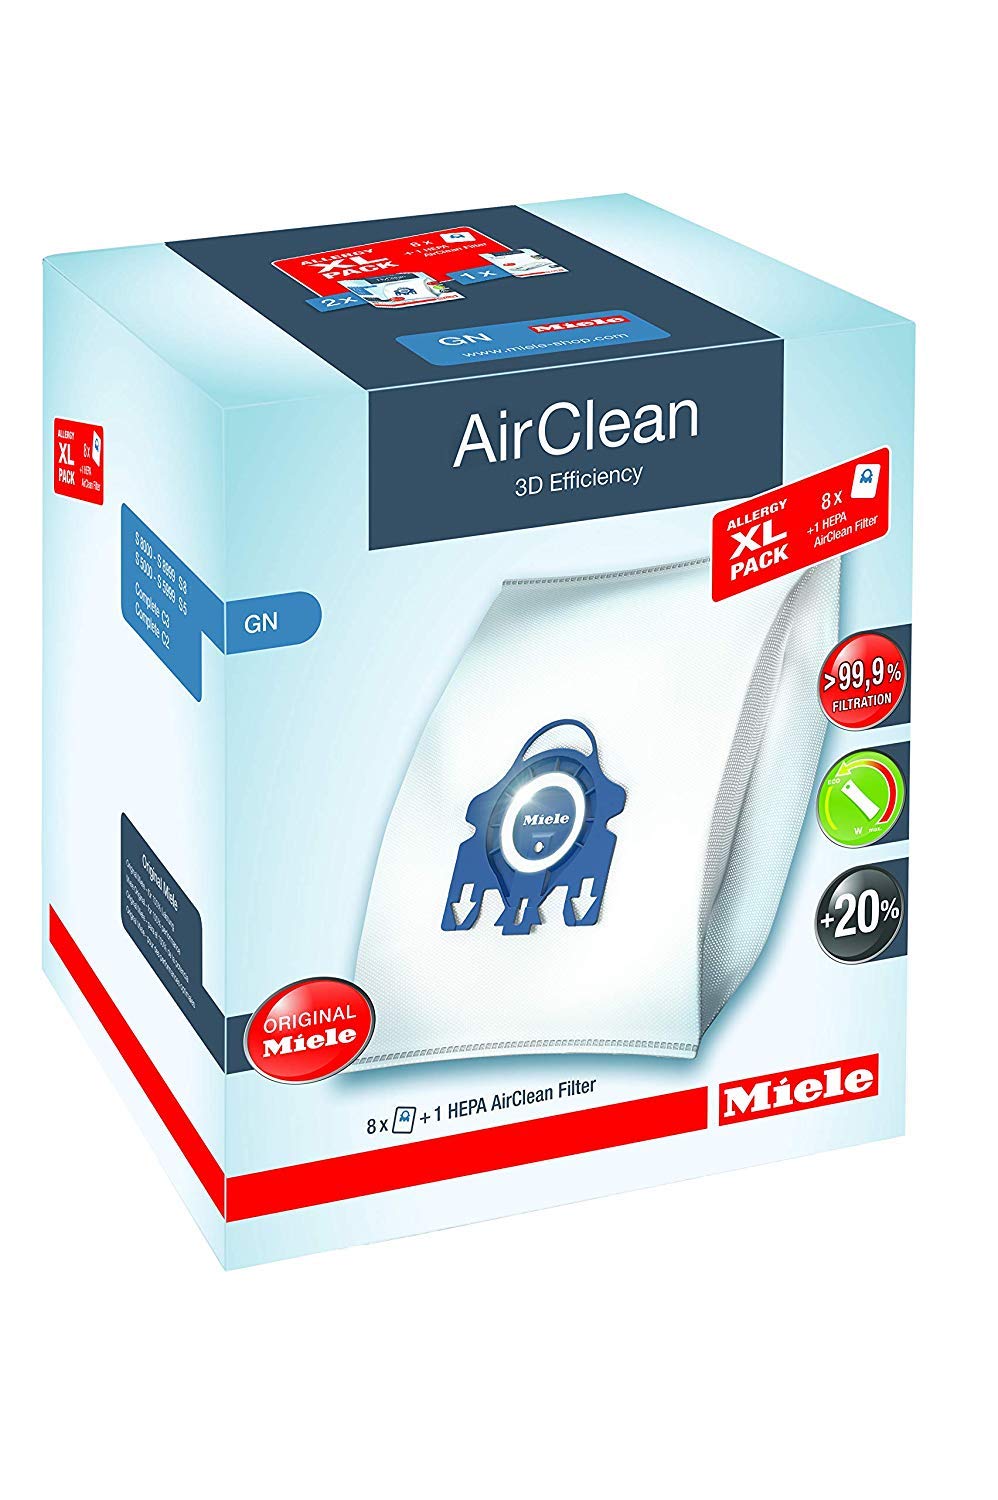 Miele AirClean 3D 効率ダストバッグ、タイプ GN、アレルギー XL パック、バッグ 8 個、プレモーター フィルター 2 個、および HEPA フィルター 1 個